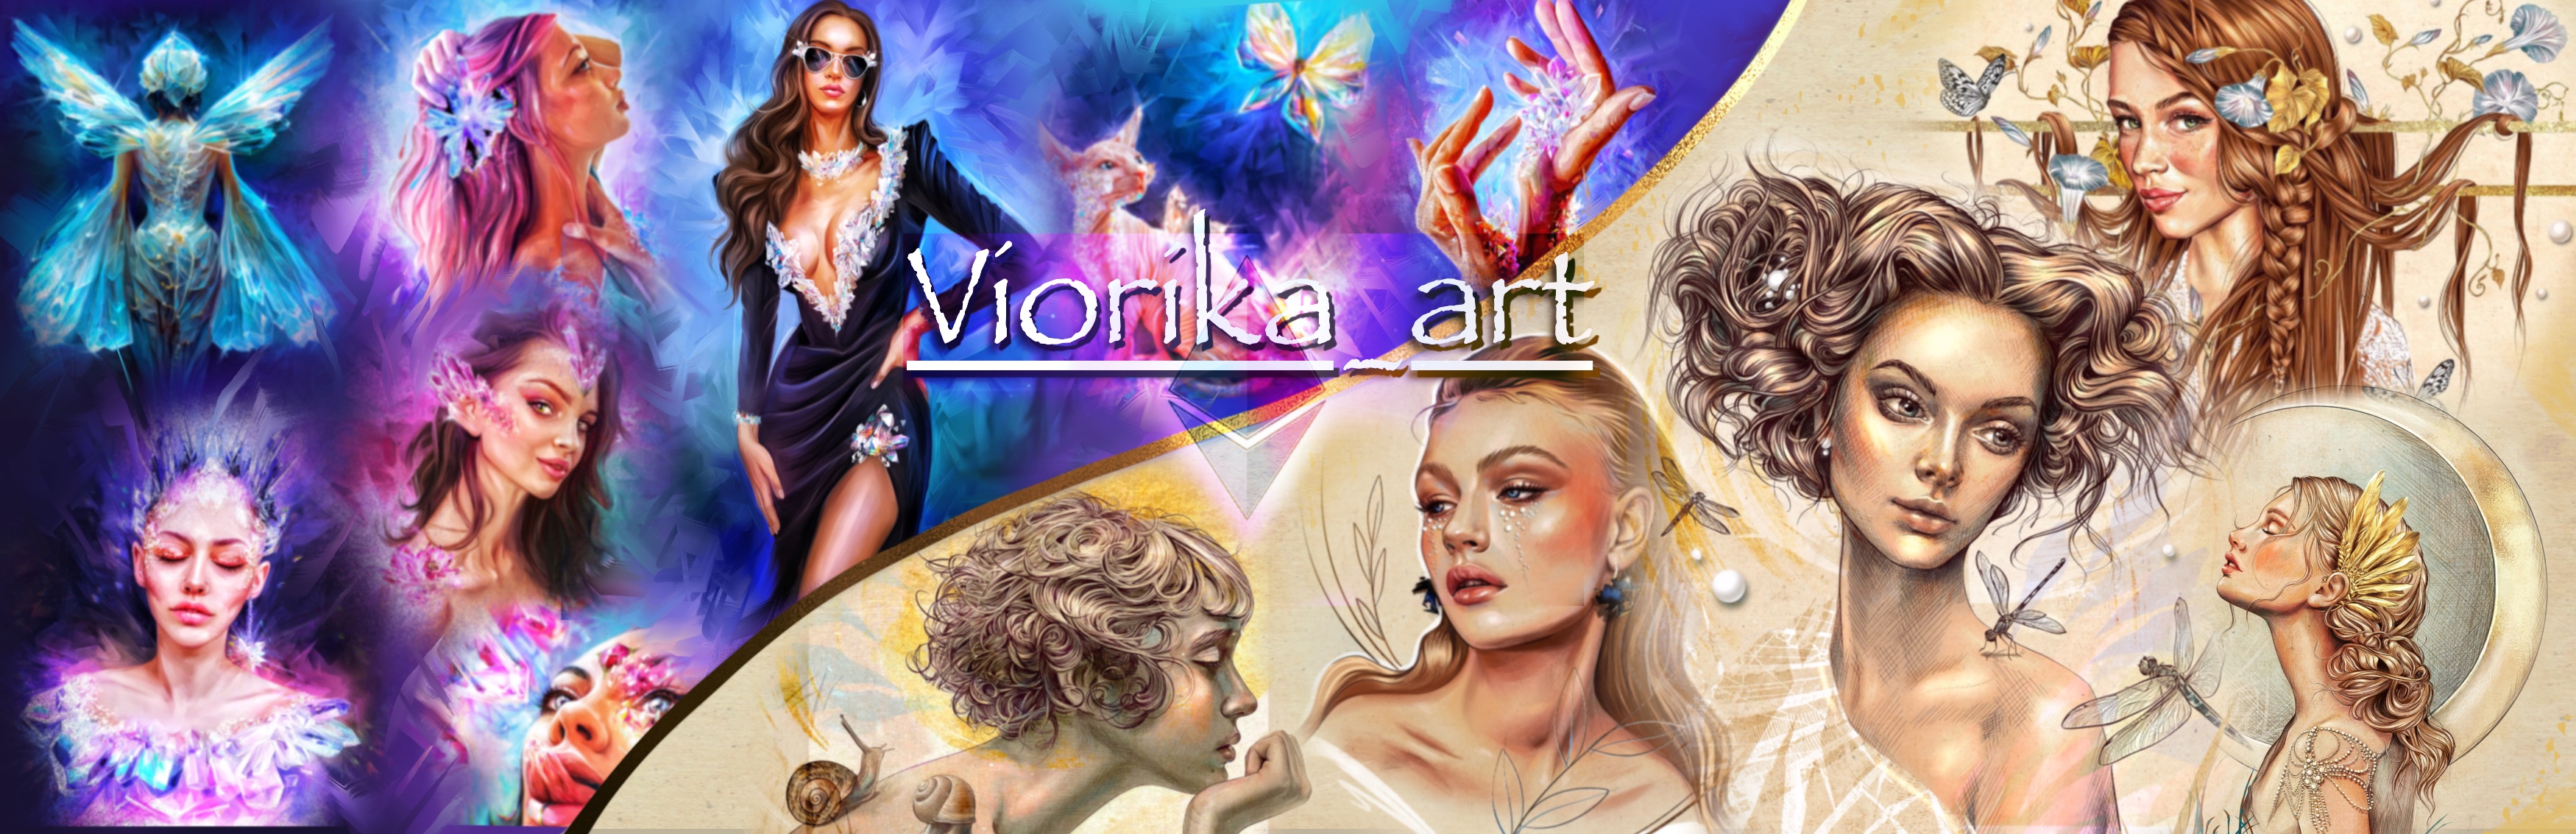 VIORIKA_art banner